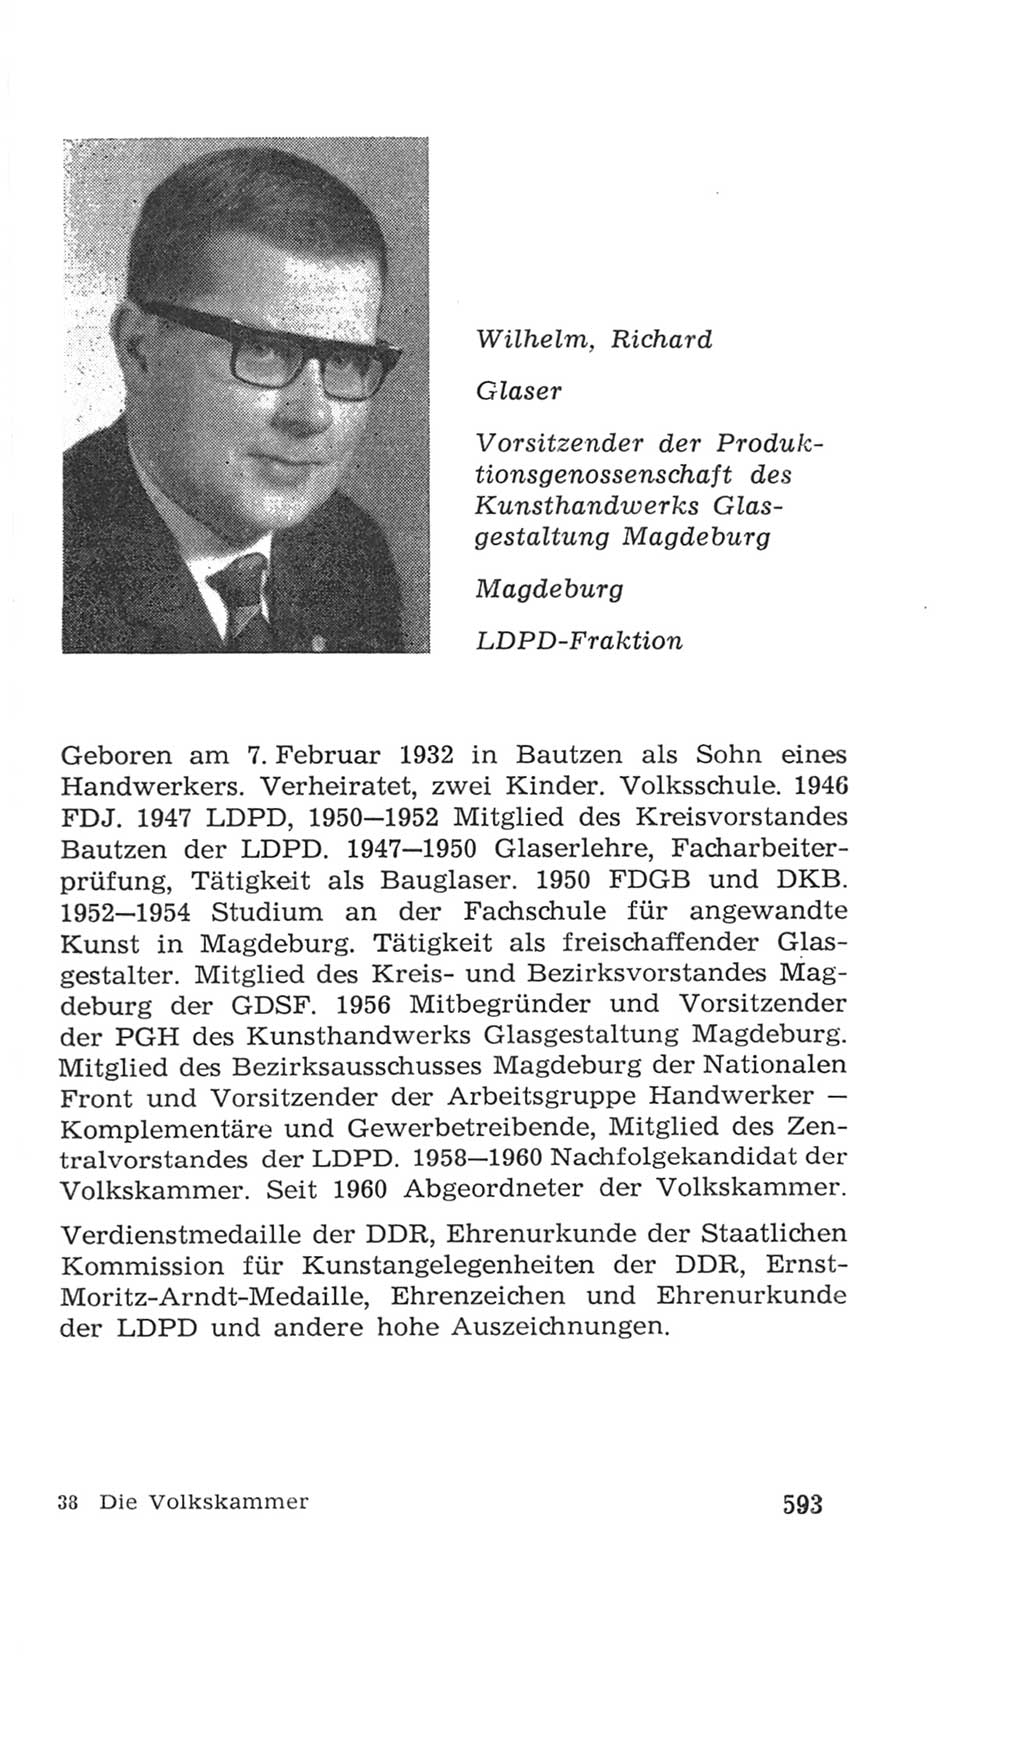 Volkskammer (VK) der Deutschen Demokratischen Republik (DDR), 4. Wahlperiode 1963-1967, Seite 593 (VK. DDR 4. WP. 1963-1967, S. 593)